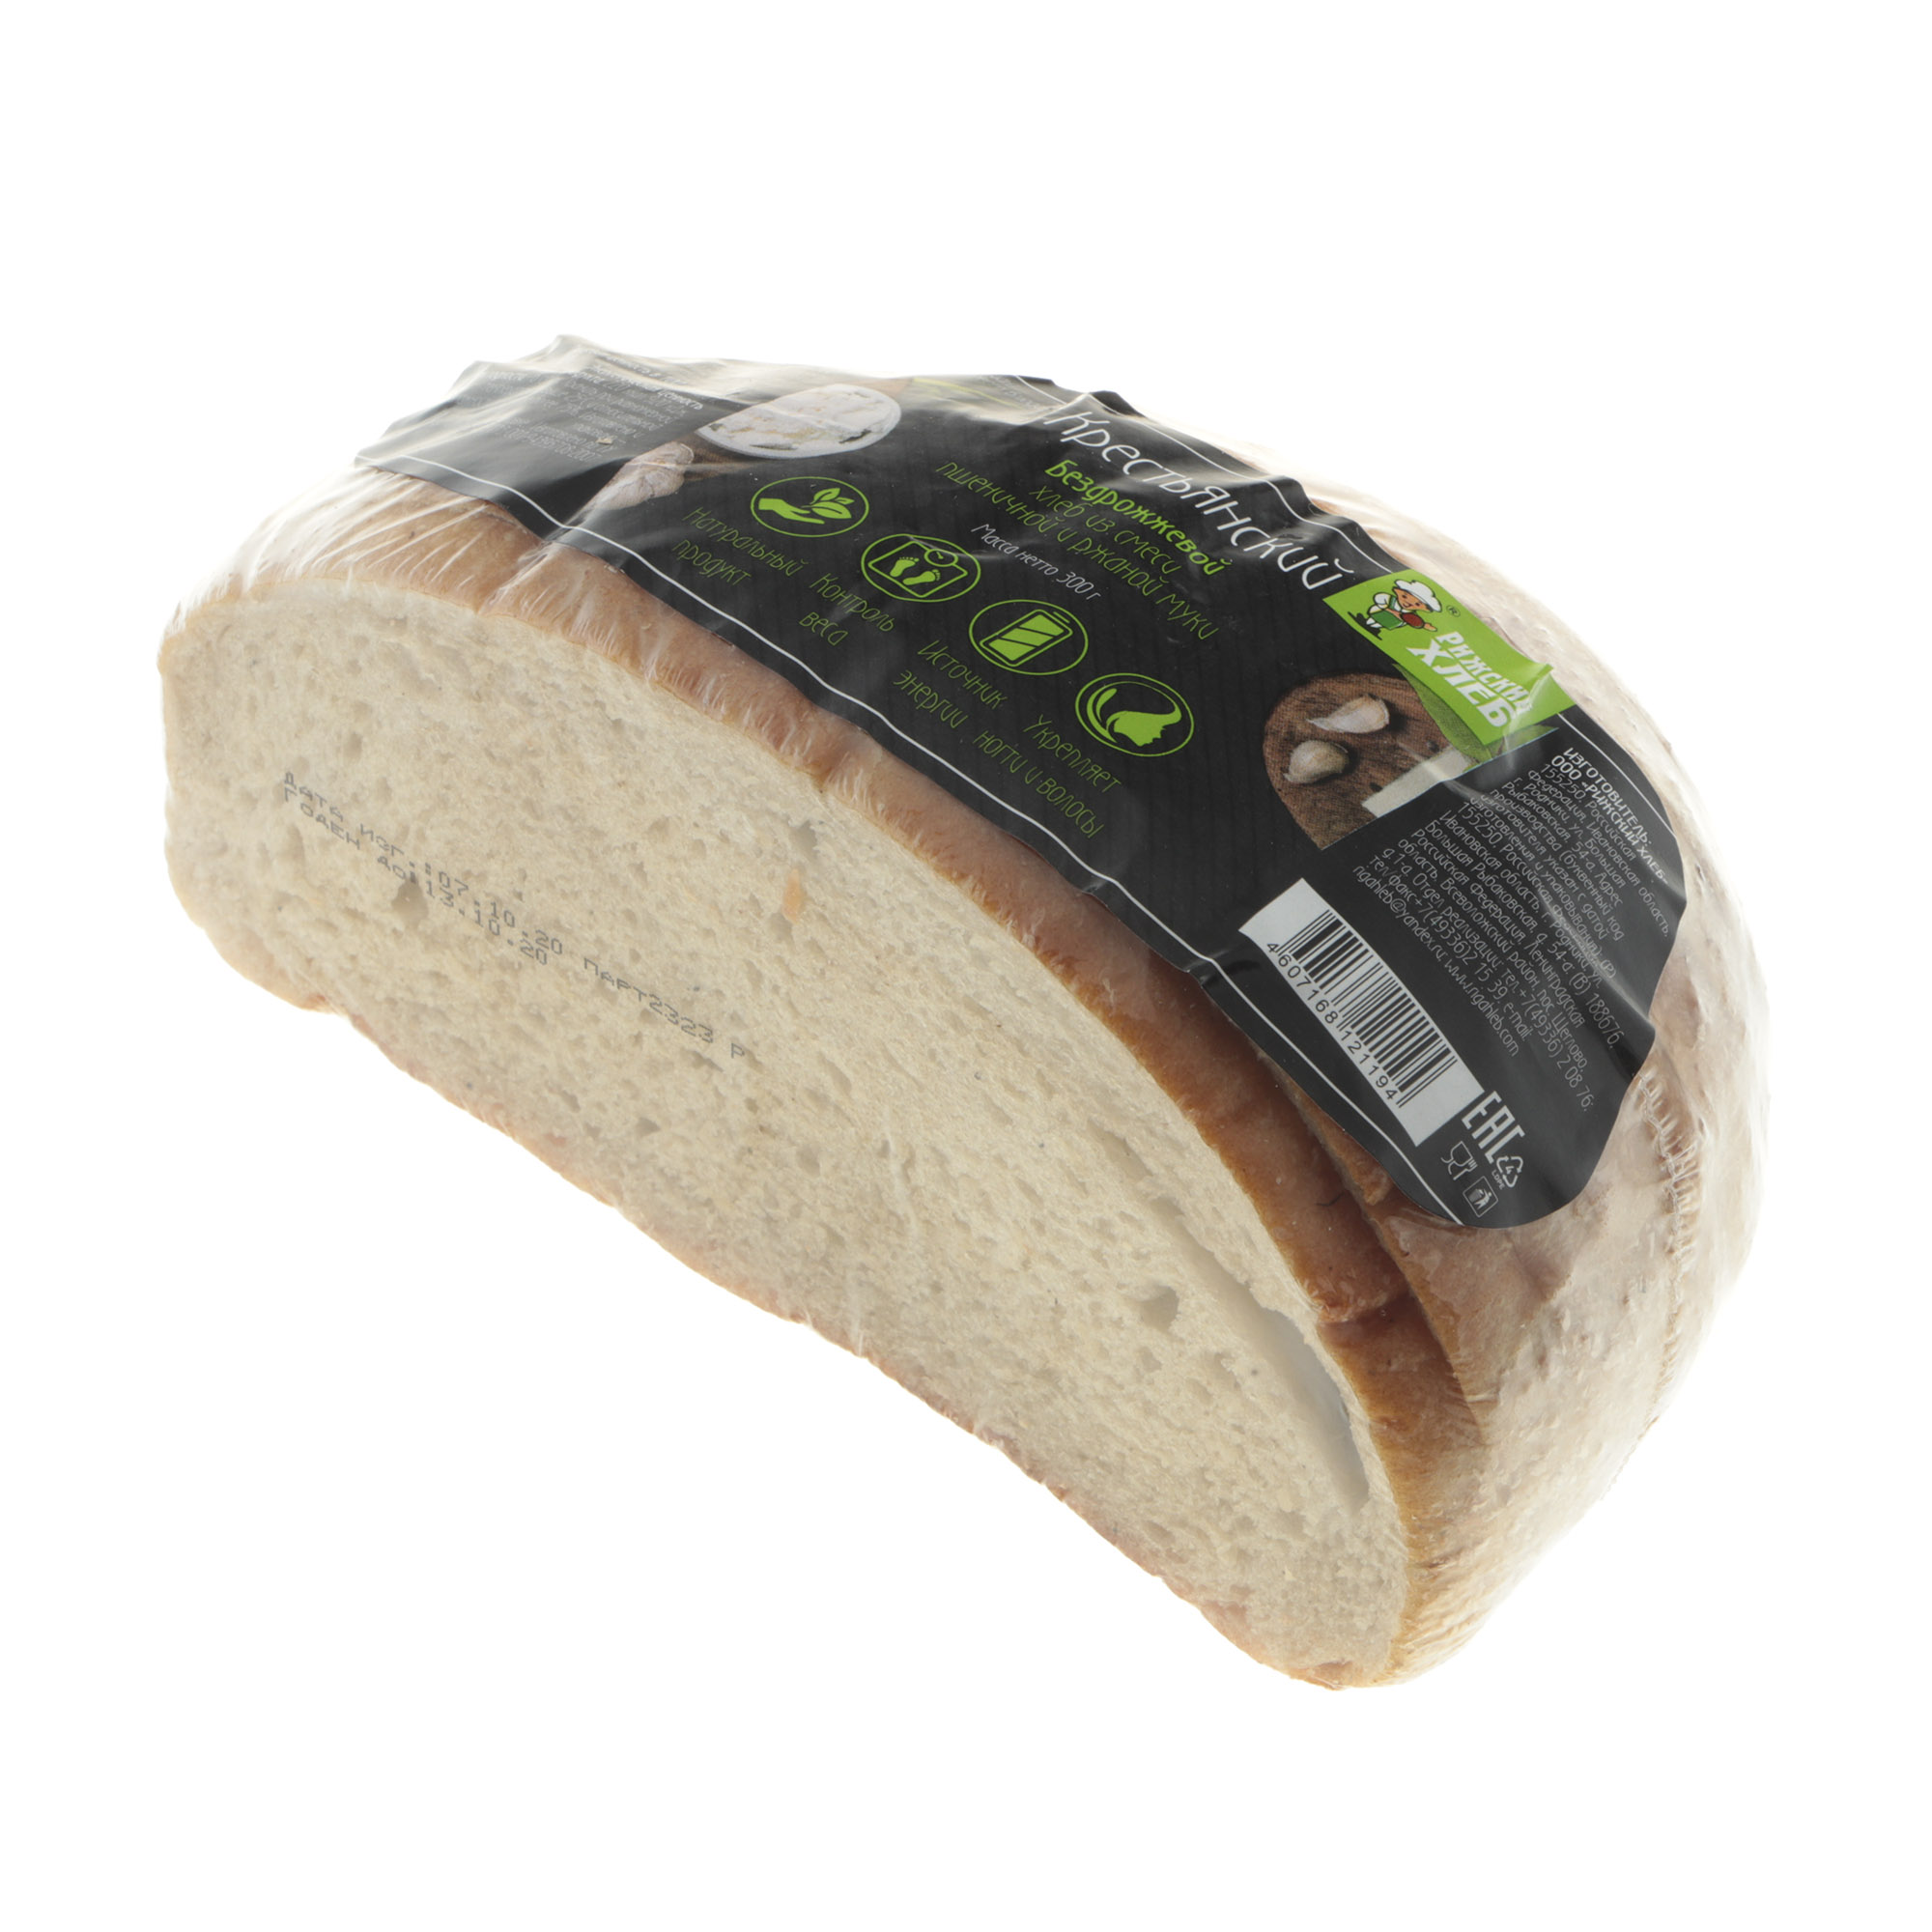 Хлеб Рижский хлеб крестьянский 300 г хлеб рижский хлеб полбяной цельнозерновой 270 г